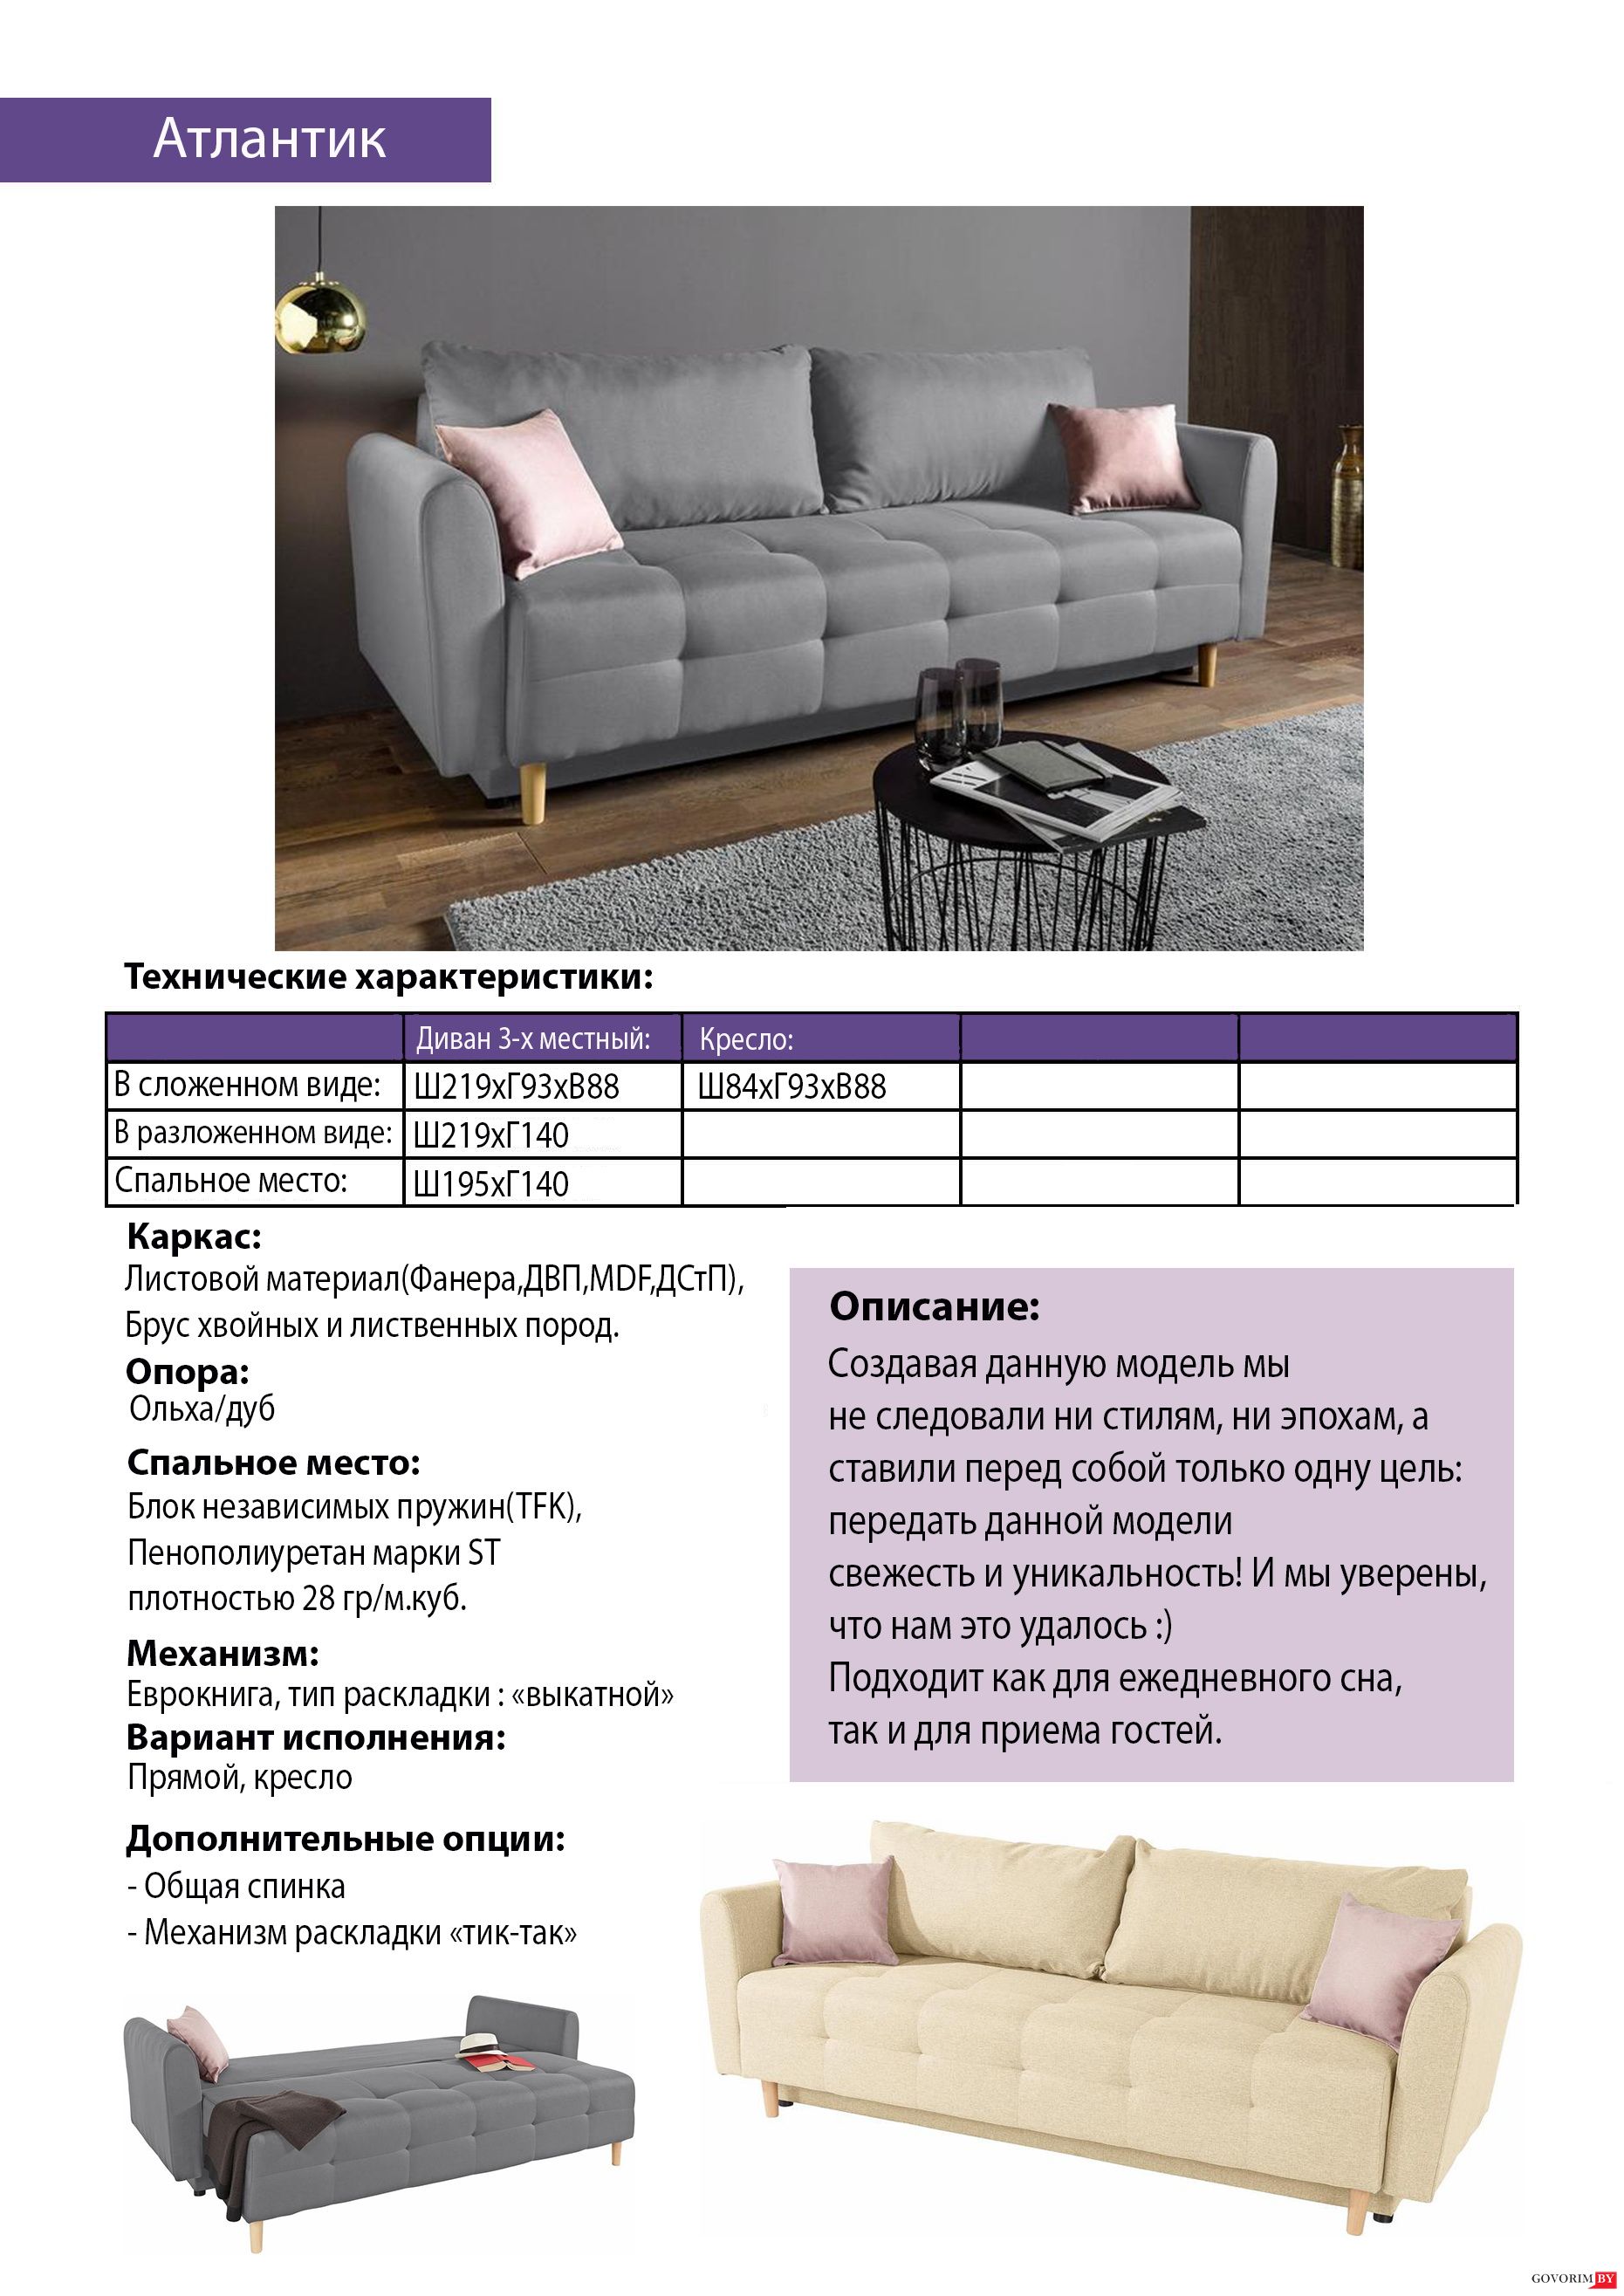 Спецификация мягкой мебели